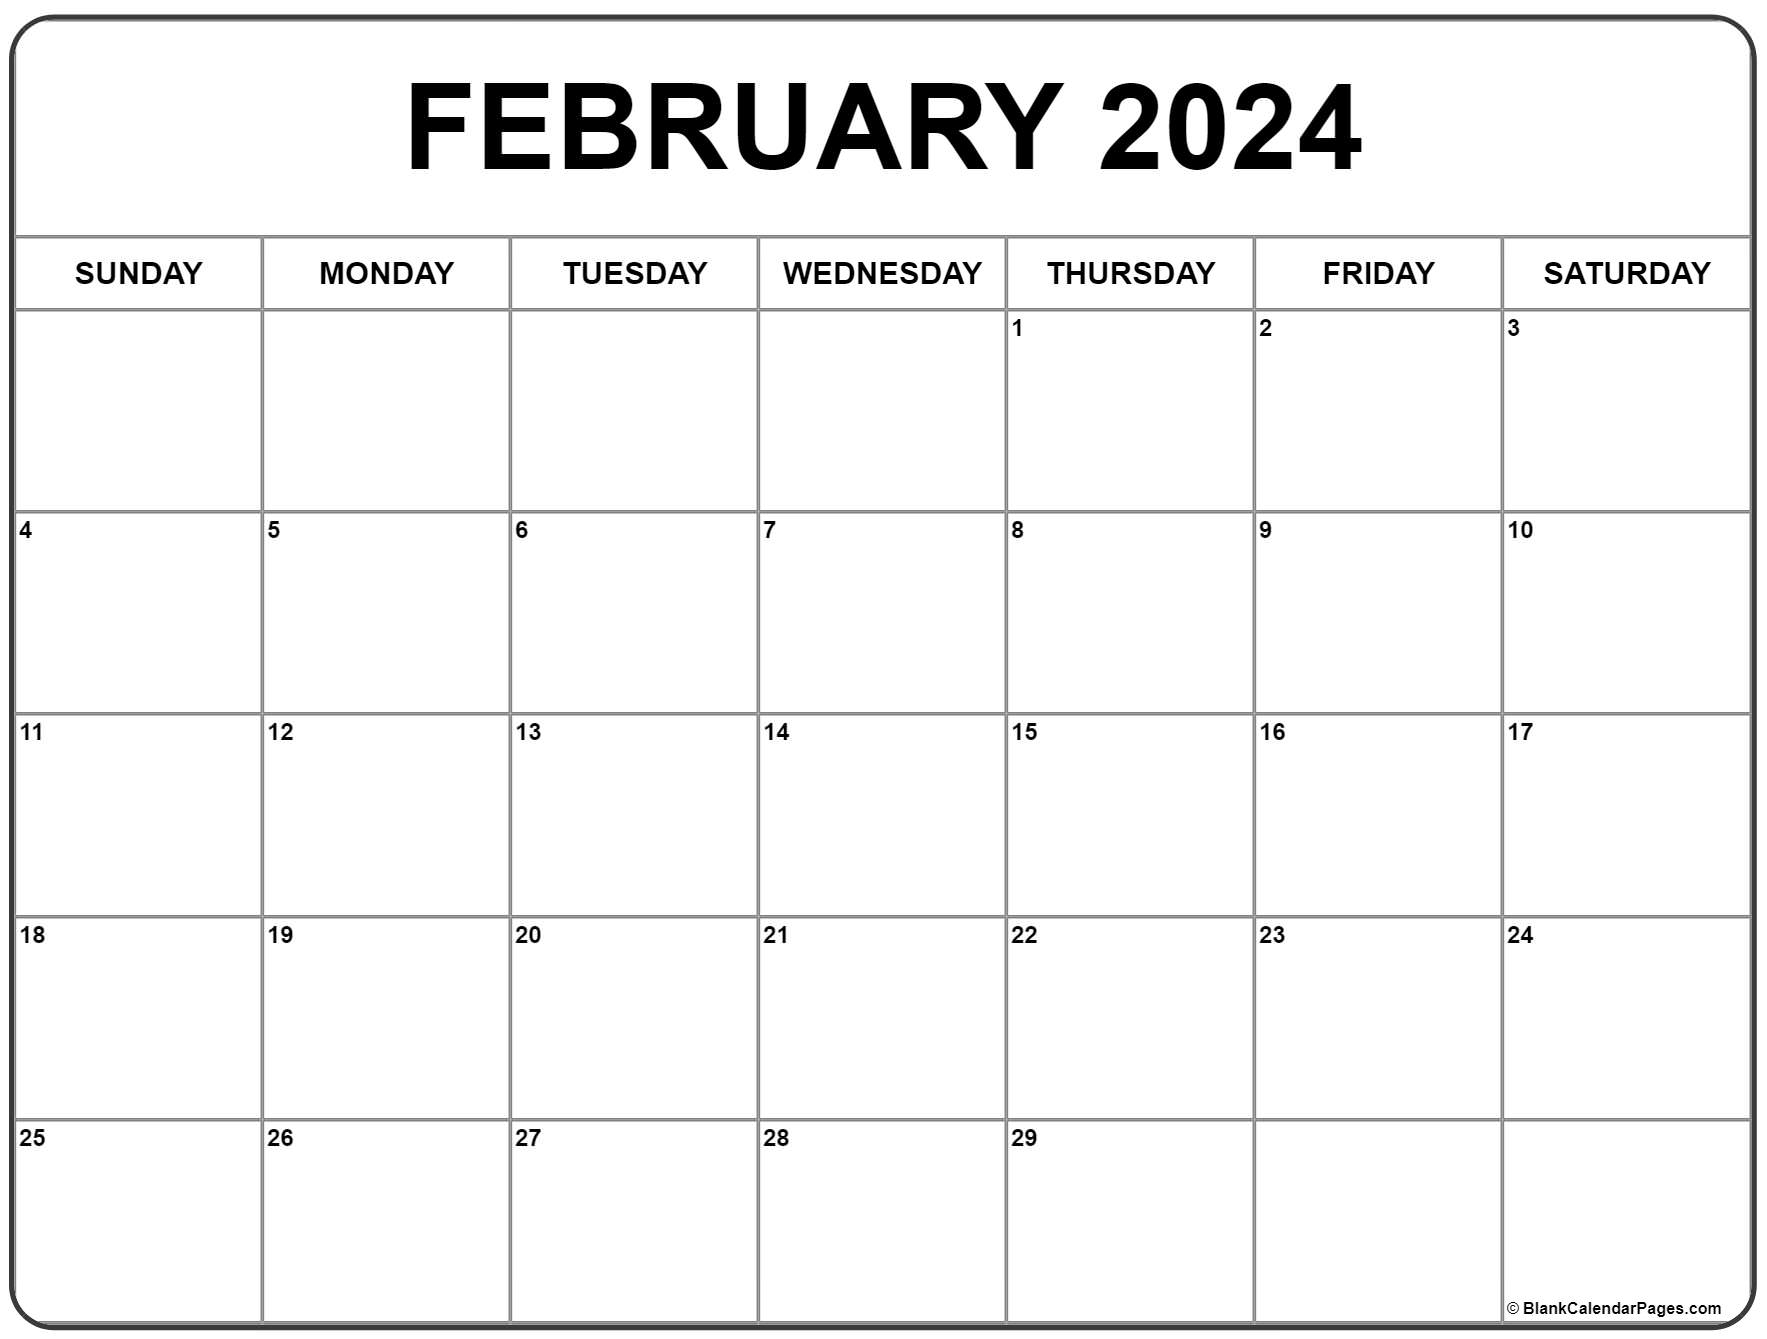 February 2024 Calendar | Free Printable Calendar for Calendar February 2024 Free Printable